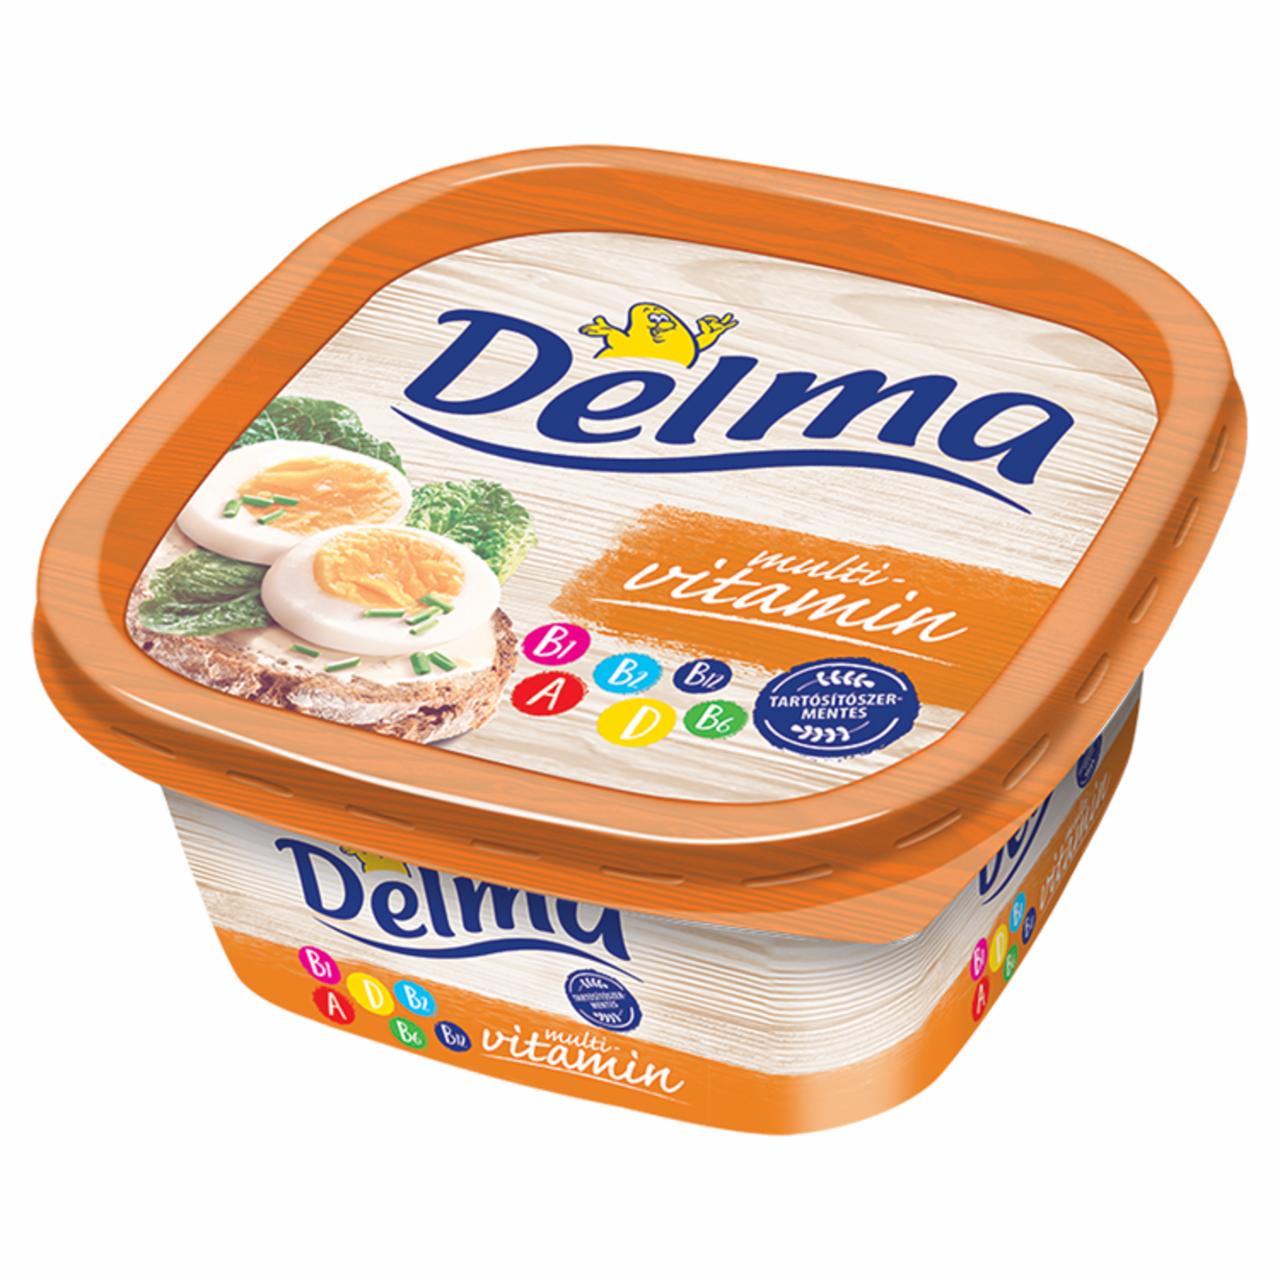 Képek - Delma Multivitamin light csészés margarin 500 g